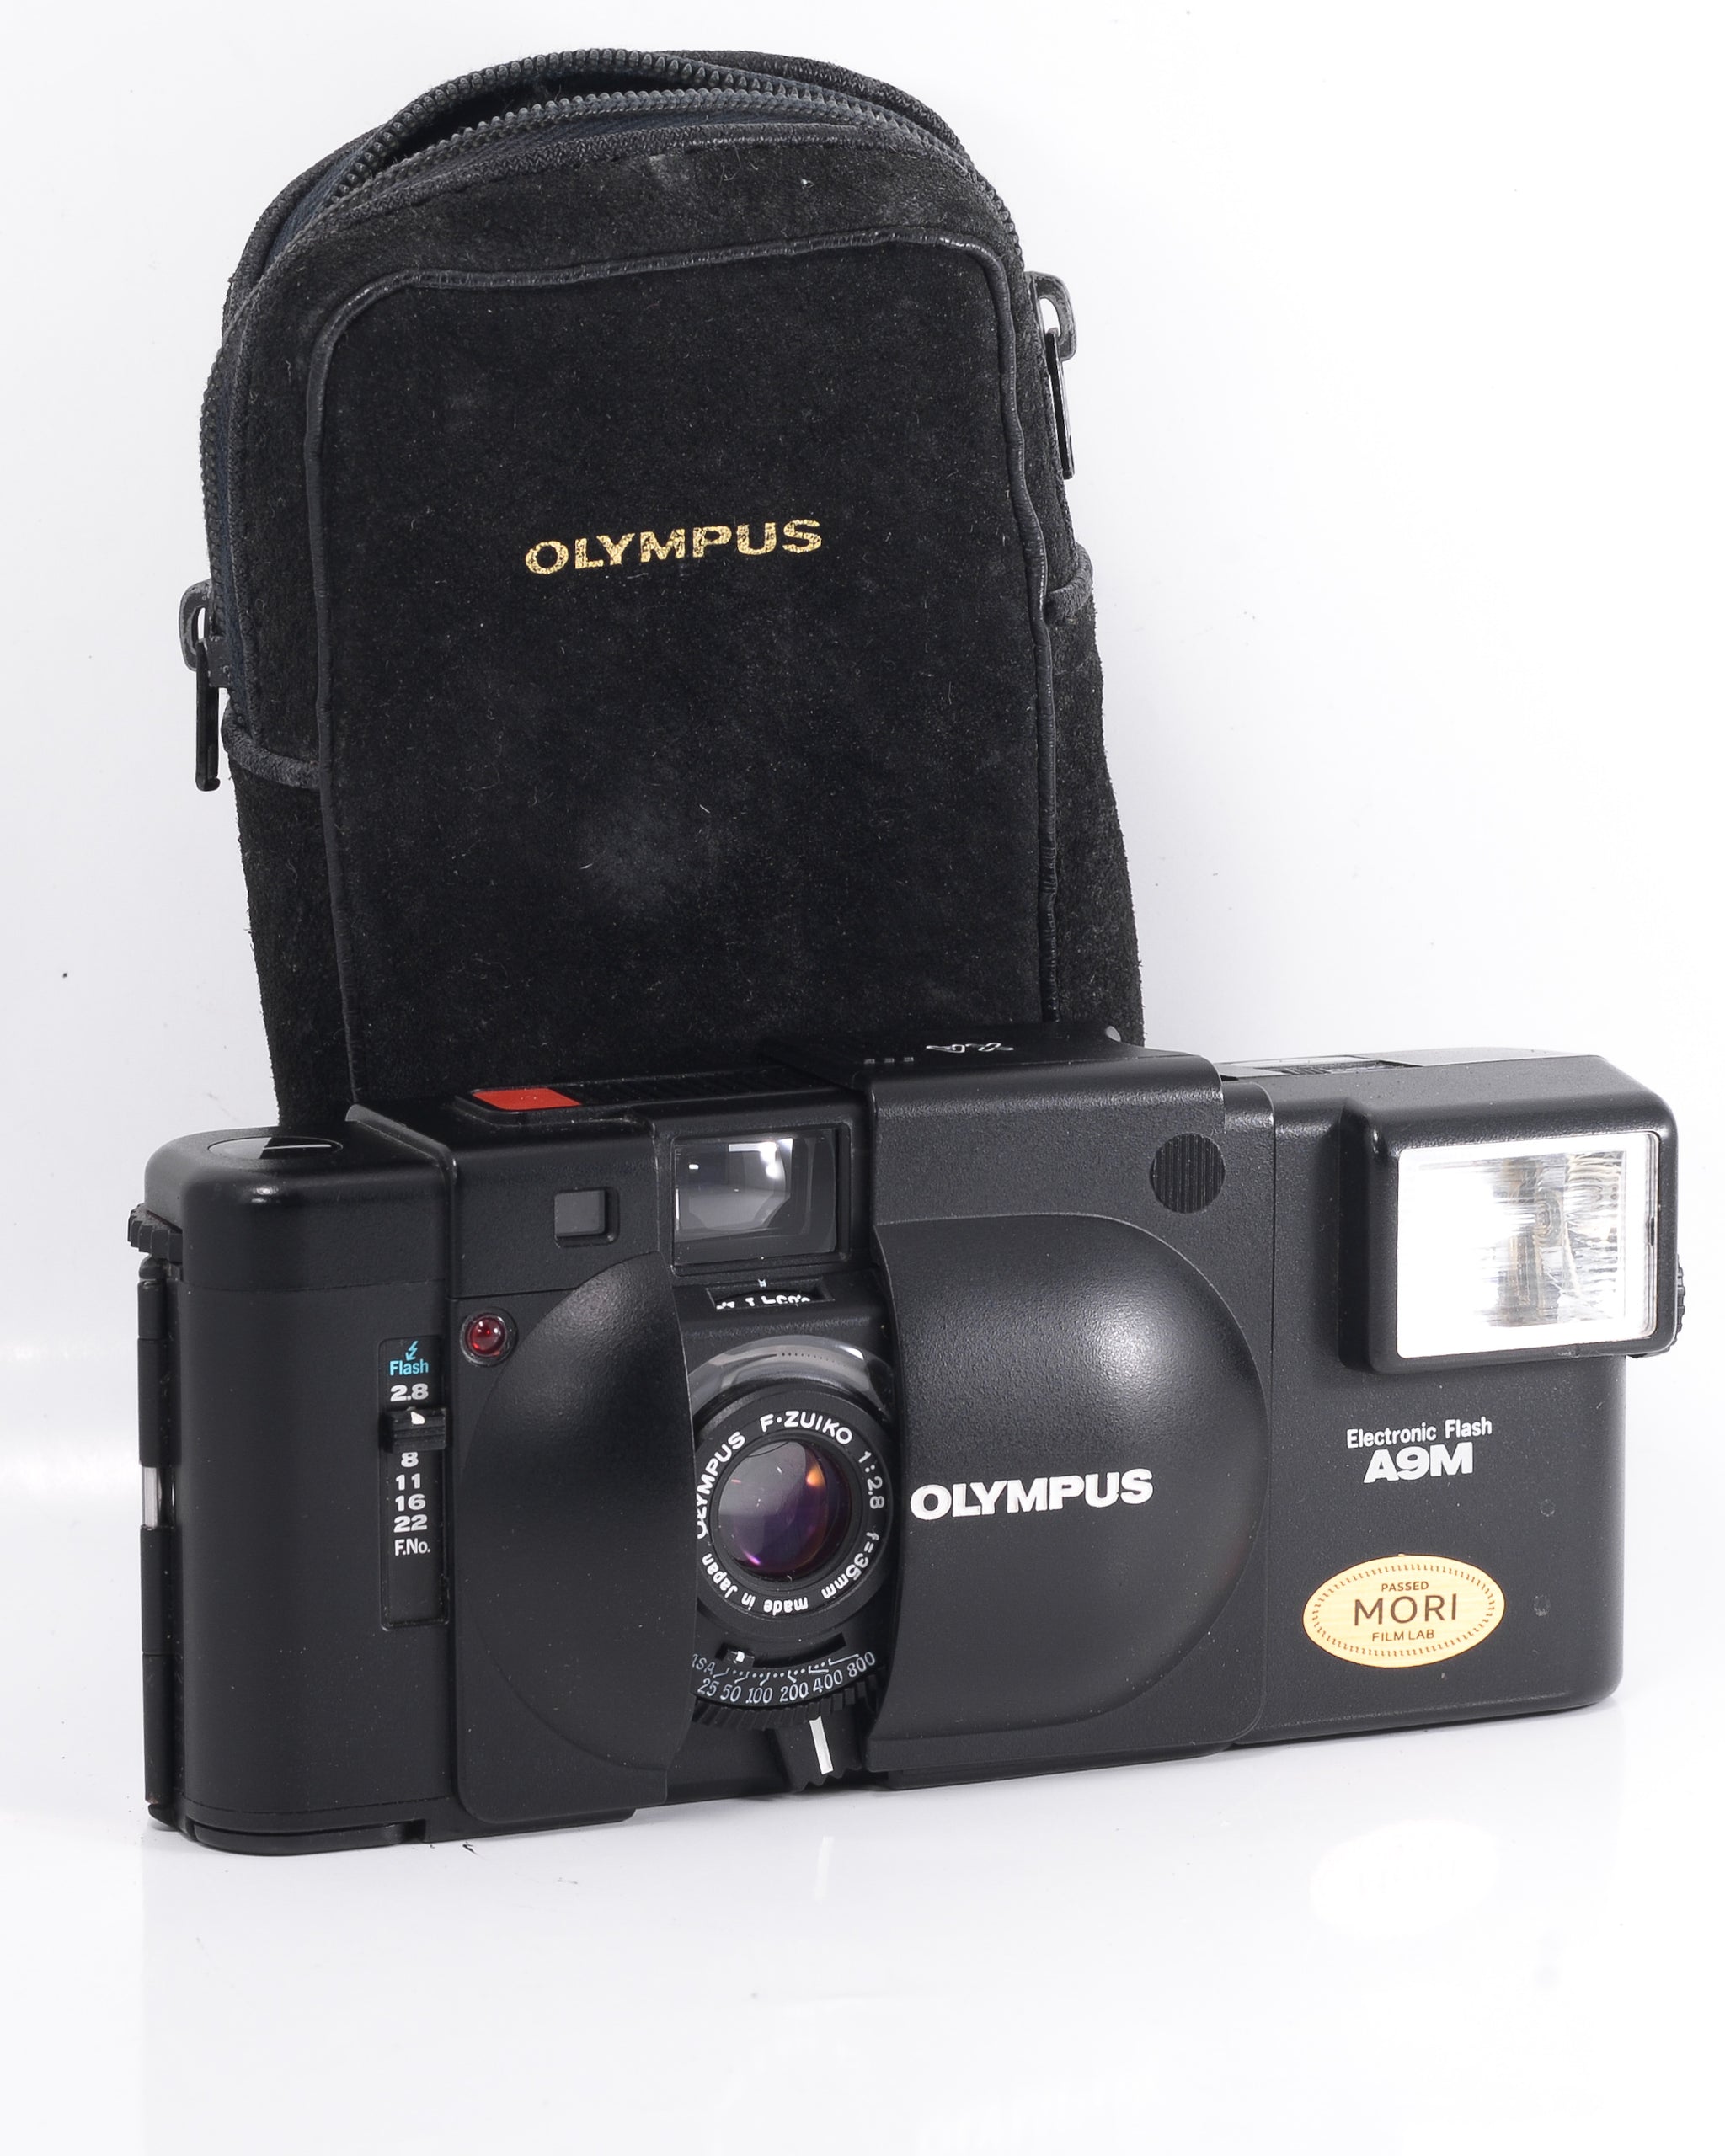 Olympus XA & F.Zuiko 35mm 2.8